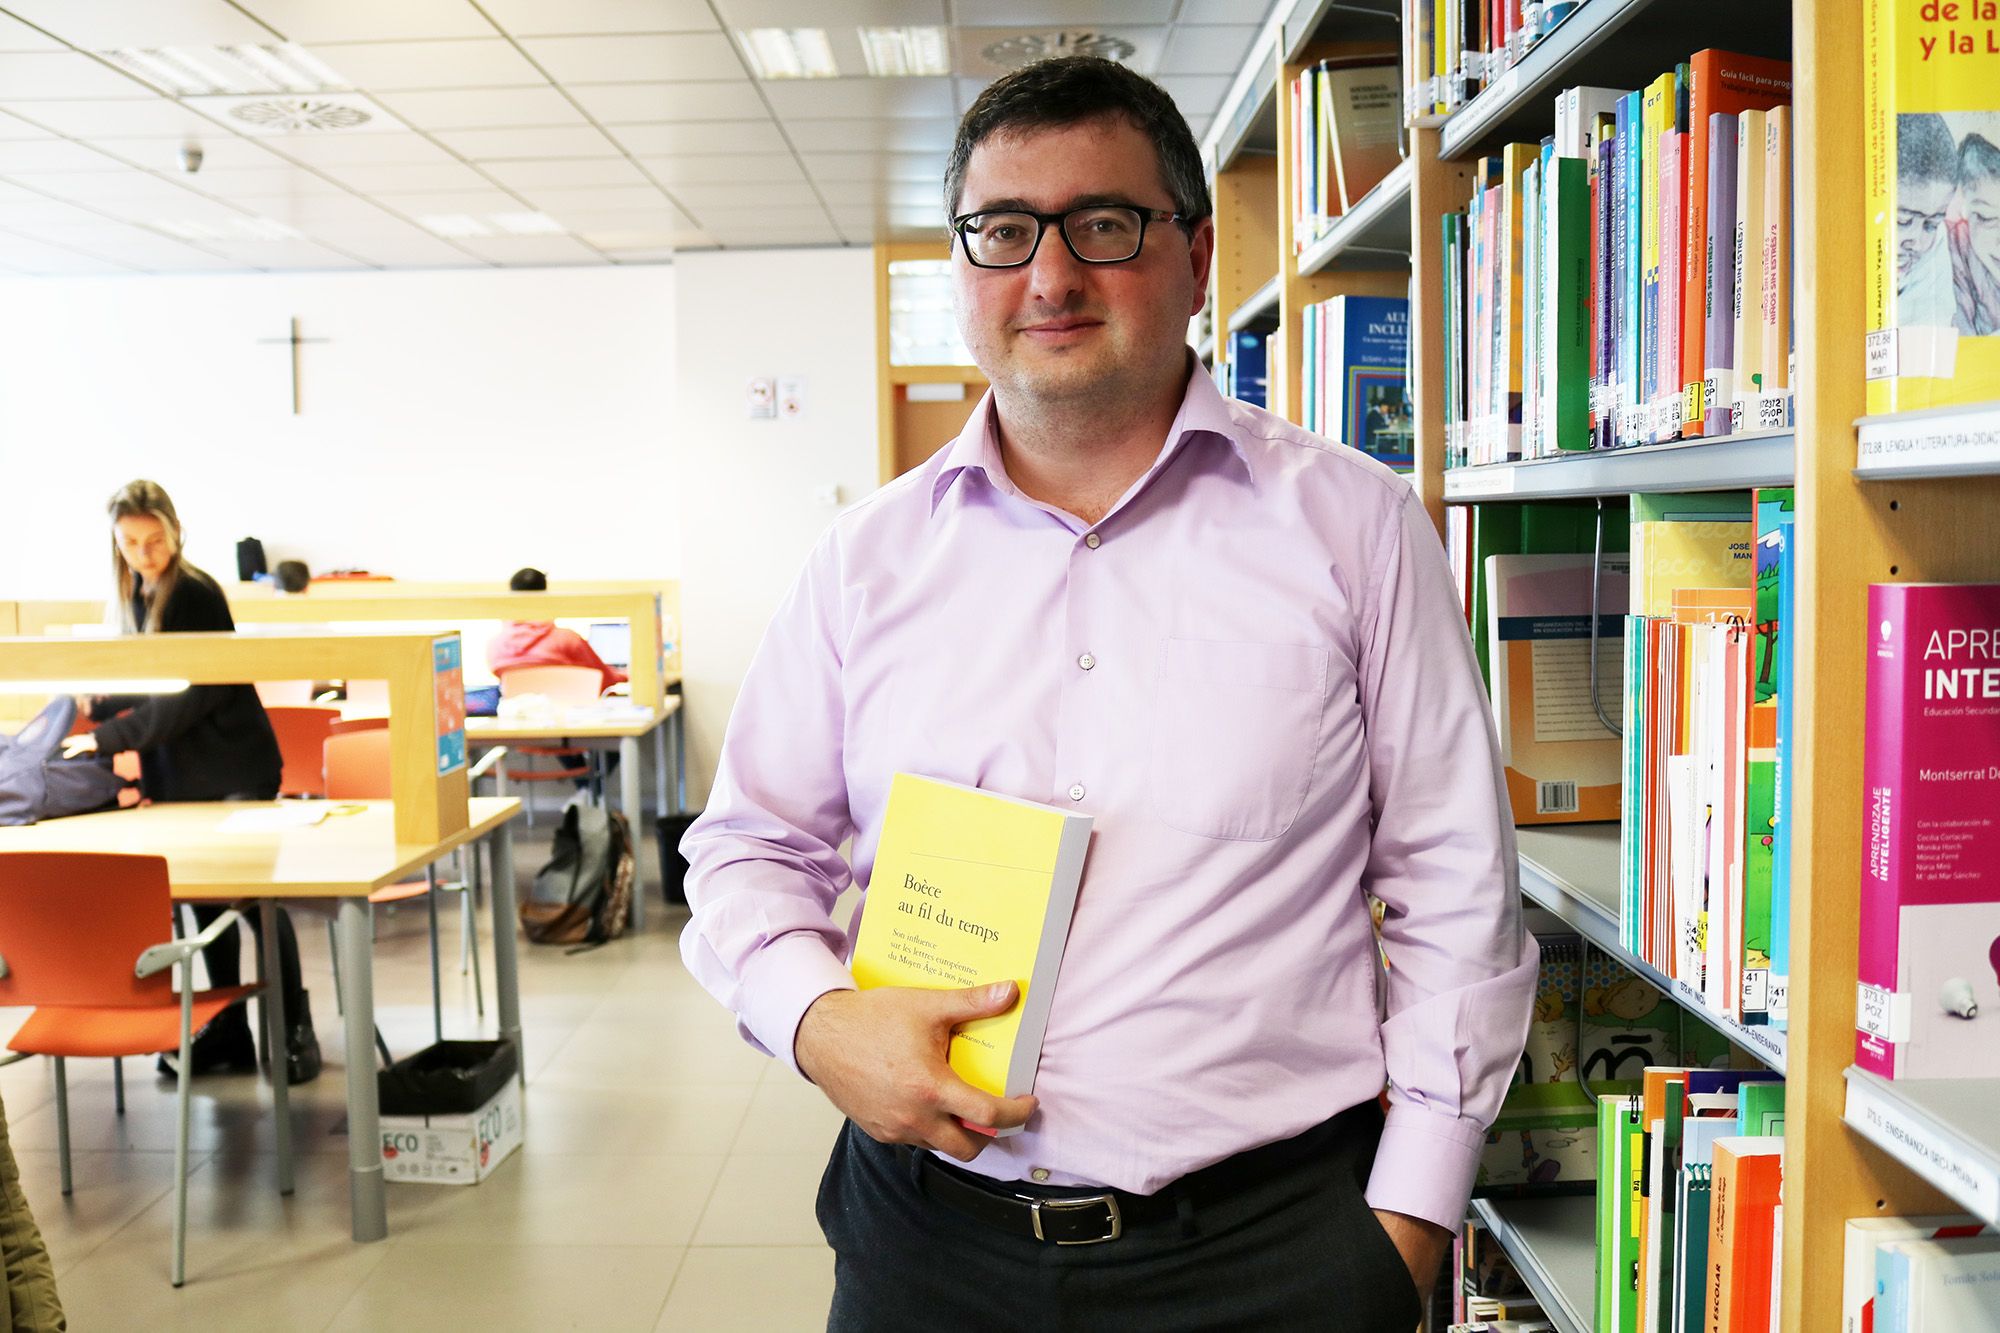 Jaime Vilarroig, profesor de la CEU UCH en Castellón, coautor de la obra colectiva sobre Boecio, editada por Garnier Classiques.